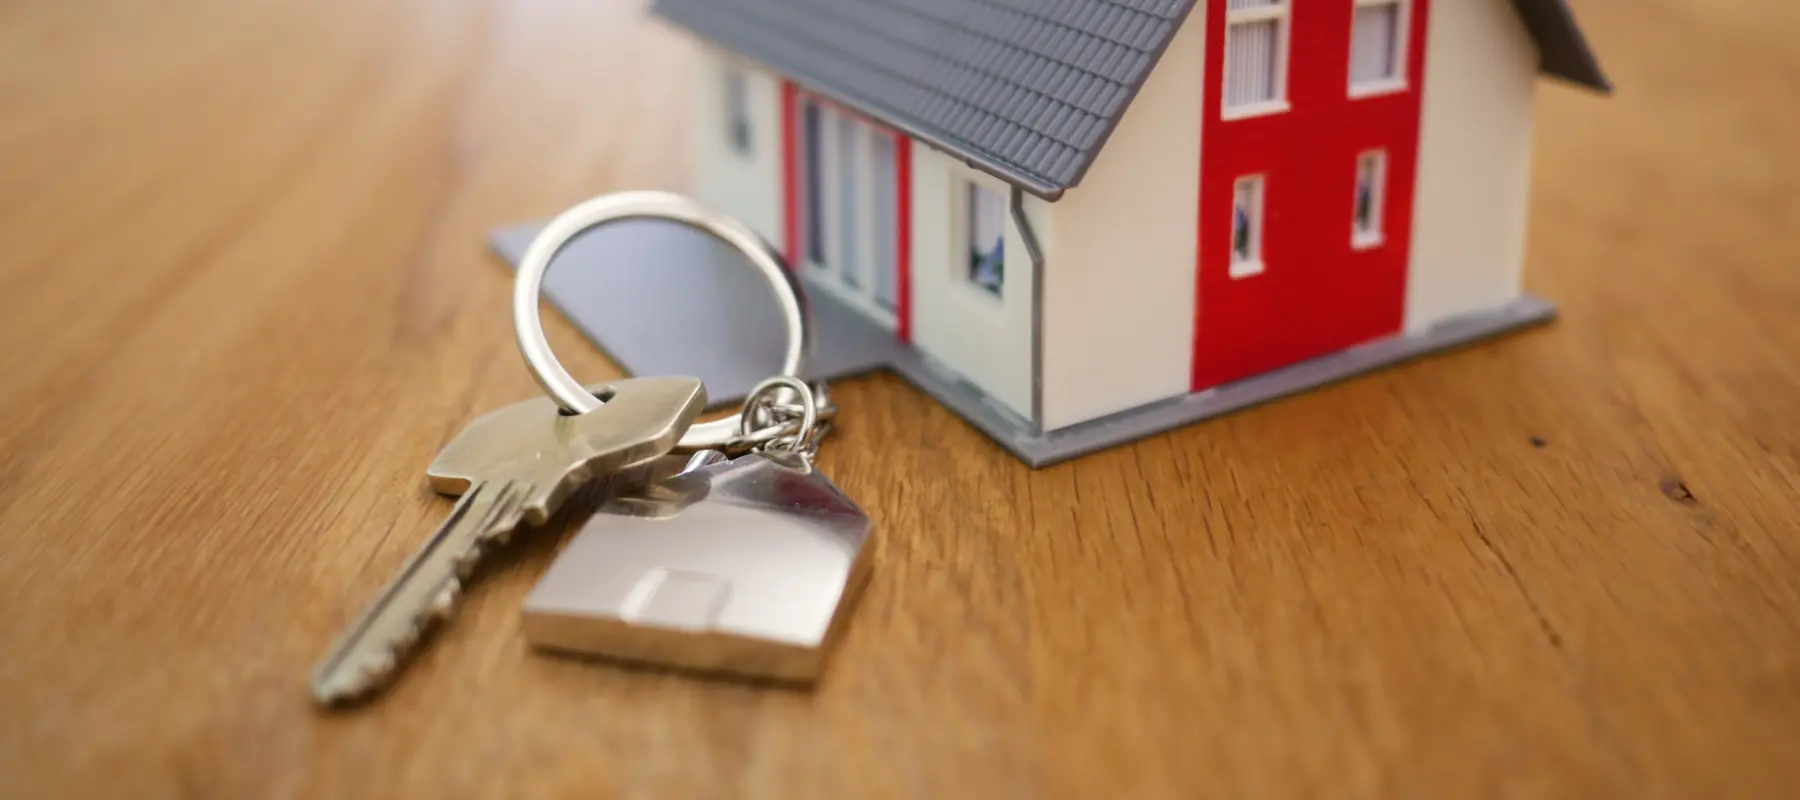 Uma chave de casa ao lado de uma maquete de uma casa sobre uma mesa de madeira